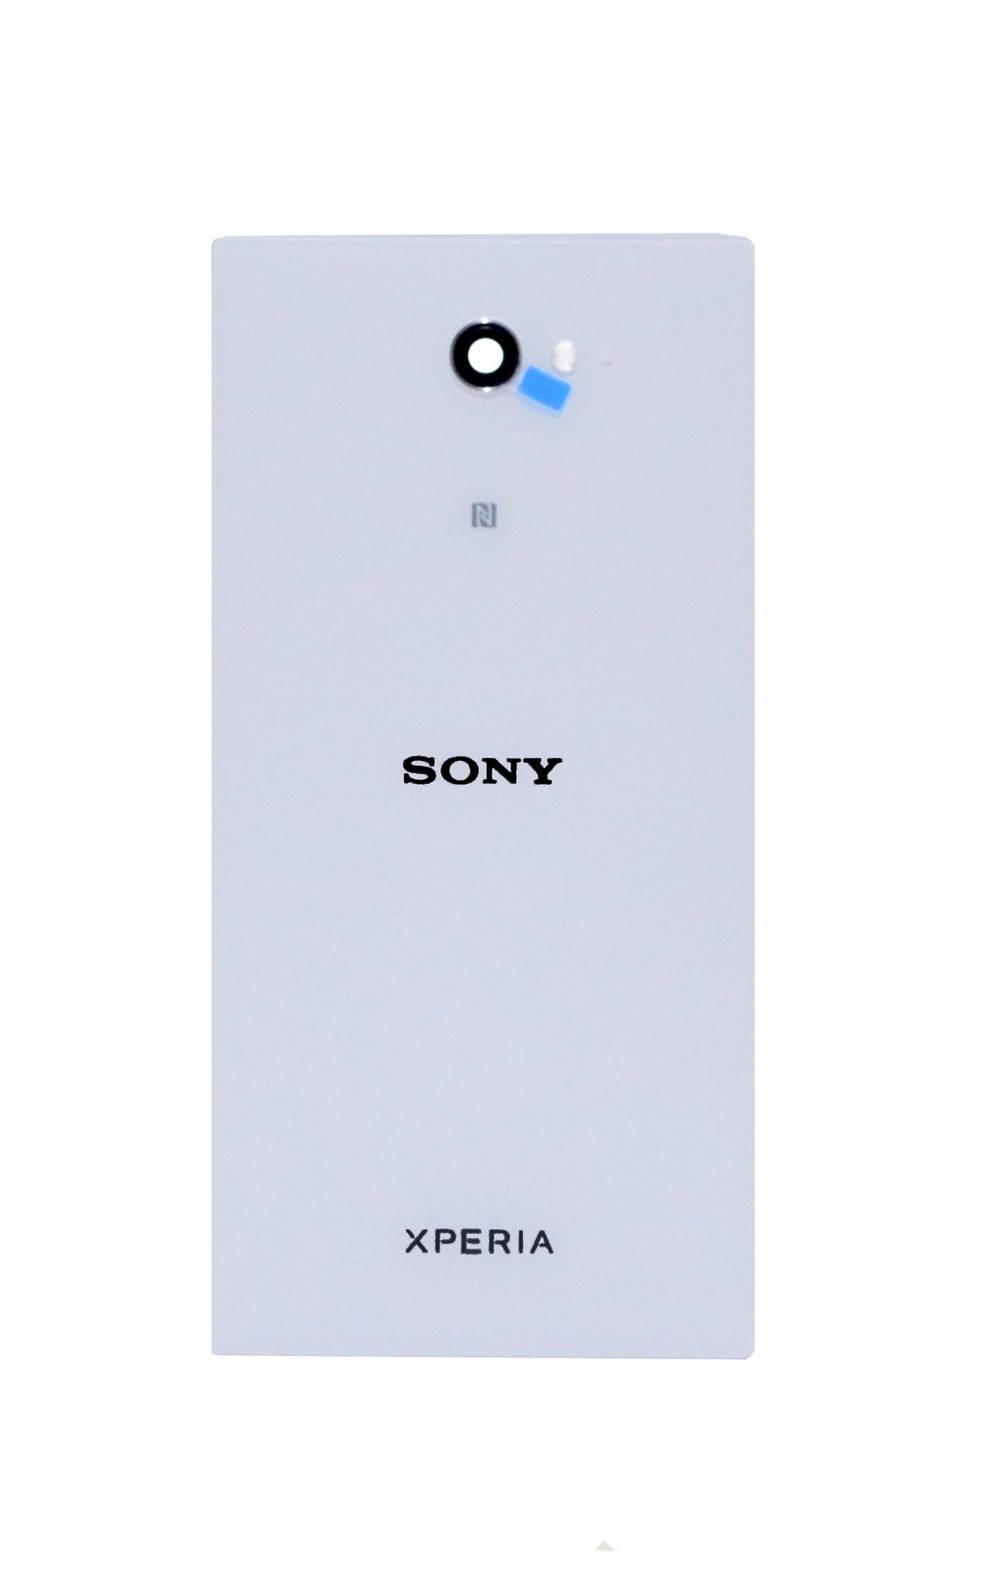 Καπάκι Μπαταρίας Sony Xperia M2 Aqua D2403 με Κεραία NFC Λευκό Original 78P7500001N